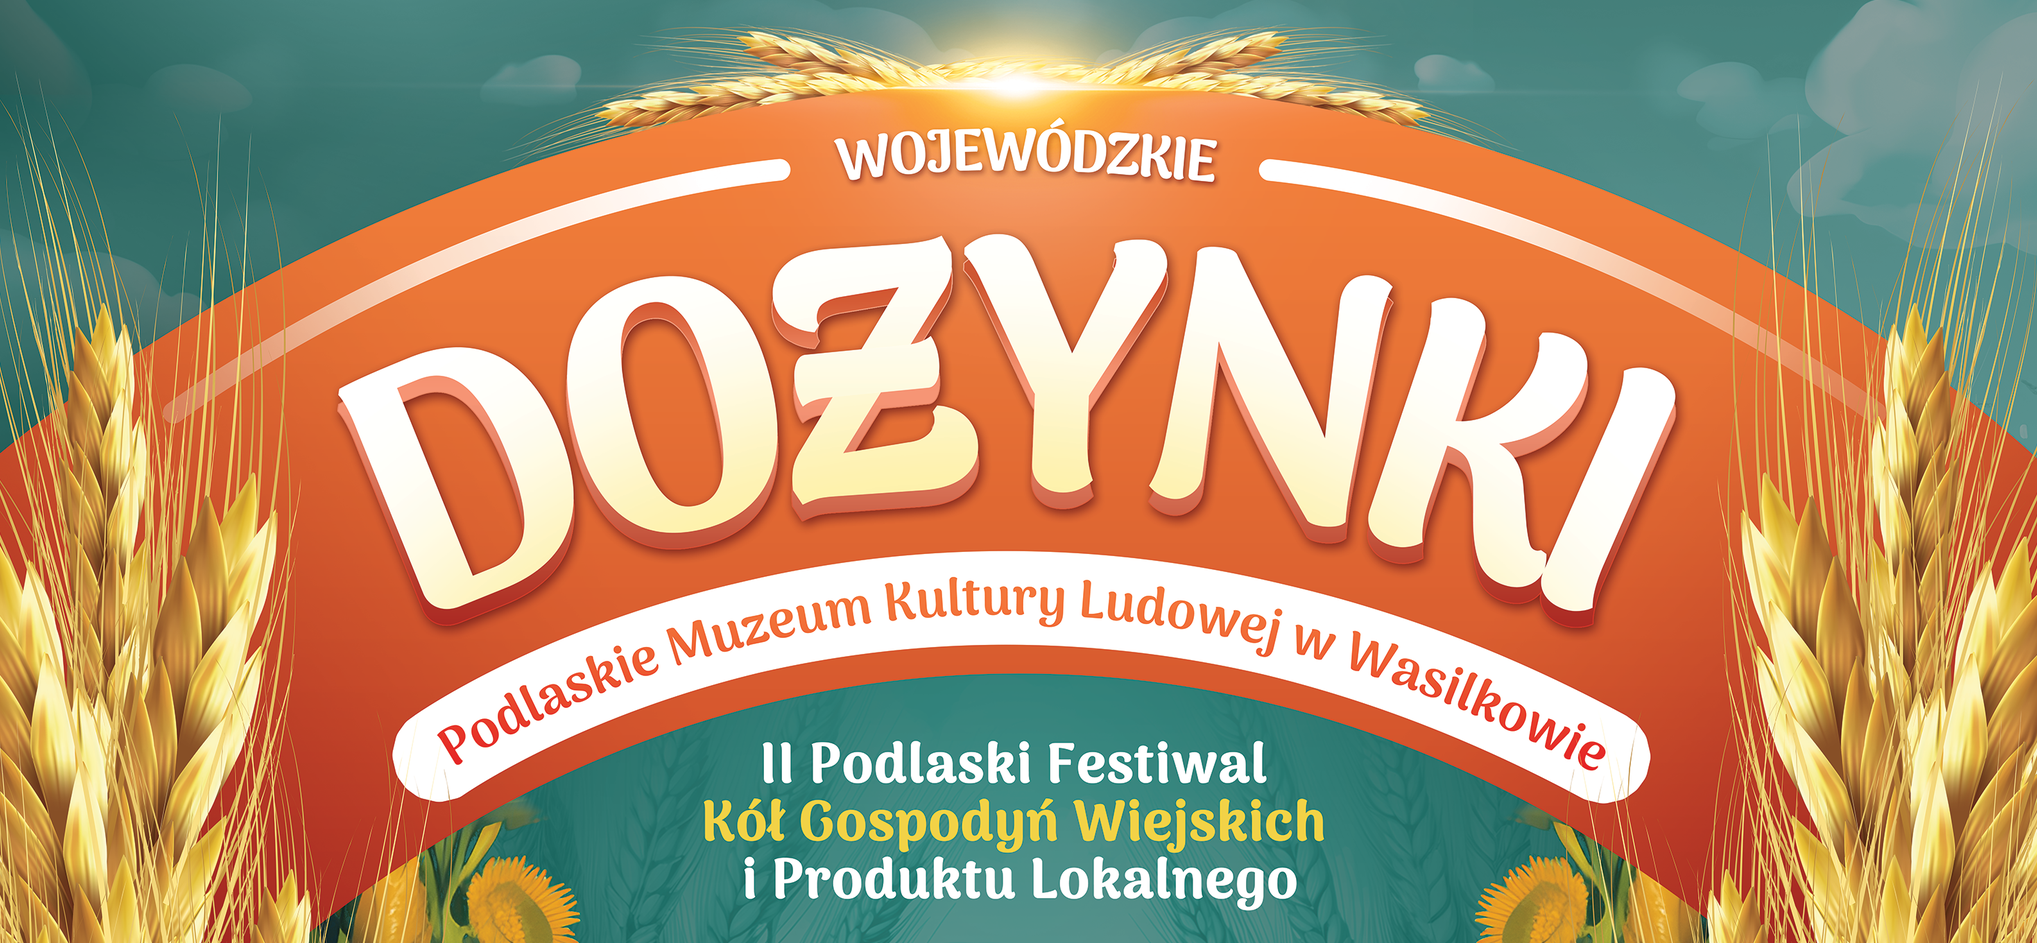 Dożynki Wojewódzkie 2023. Marszałek zaprasza na święto plonów do muzeum kultury ludowej